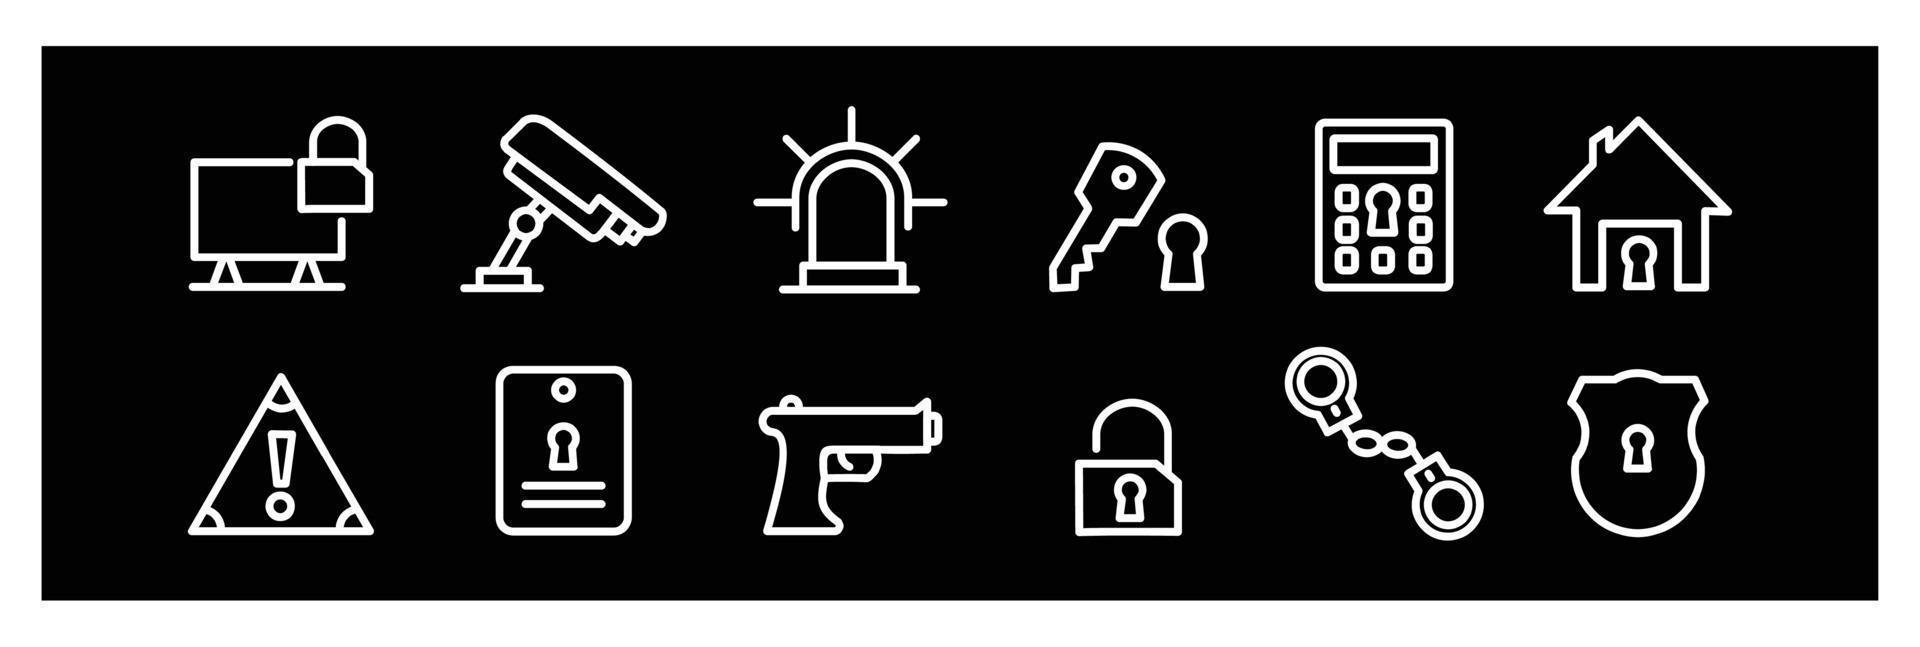 conjunto de ícones de conceito simples de segurança plana, contém ícones como protection.icons para design em fundo preto vetor